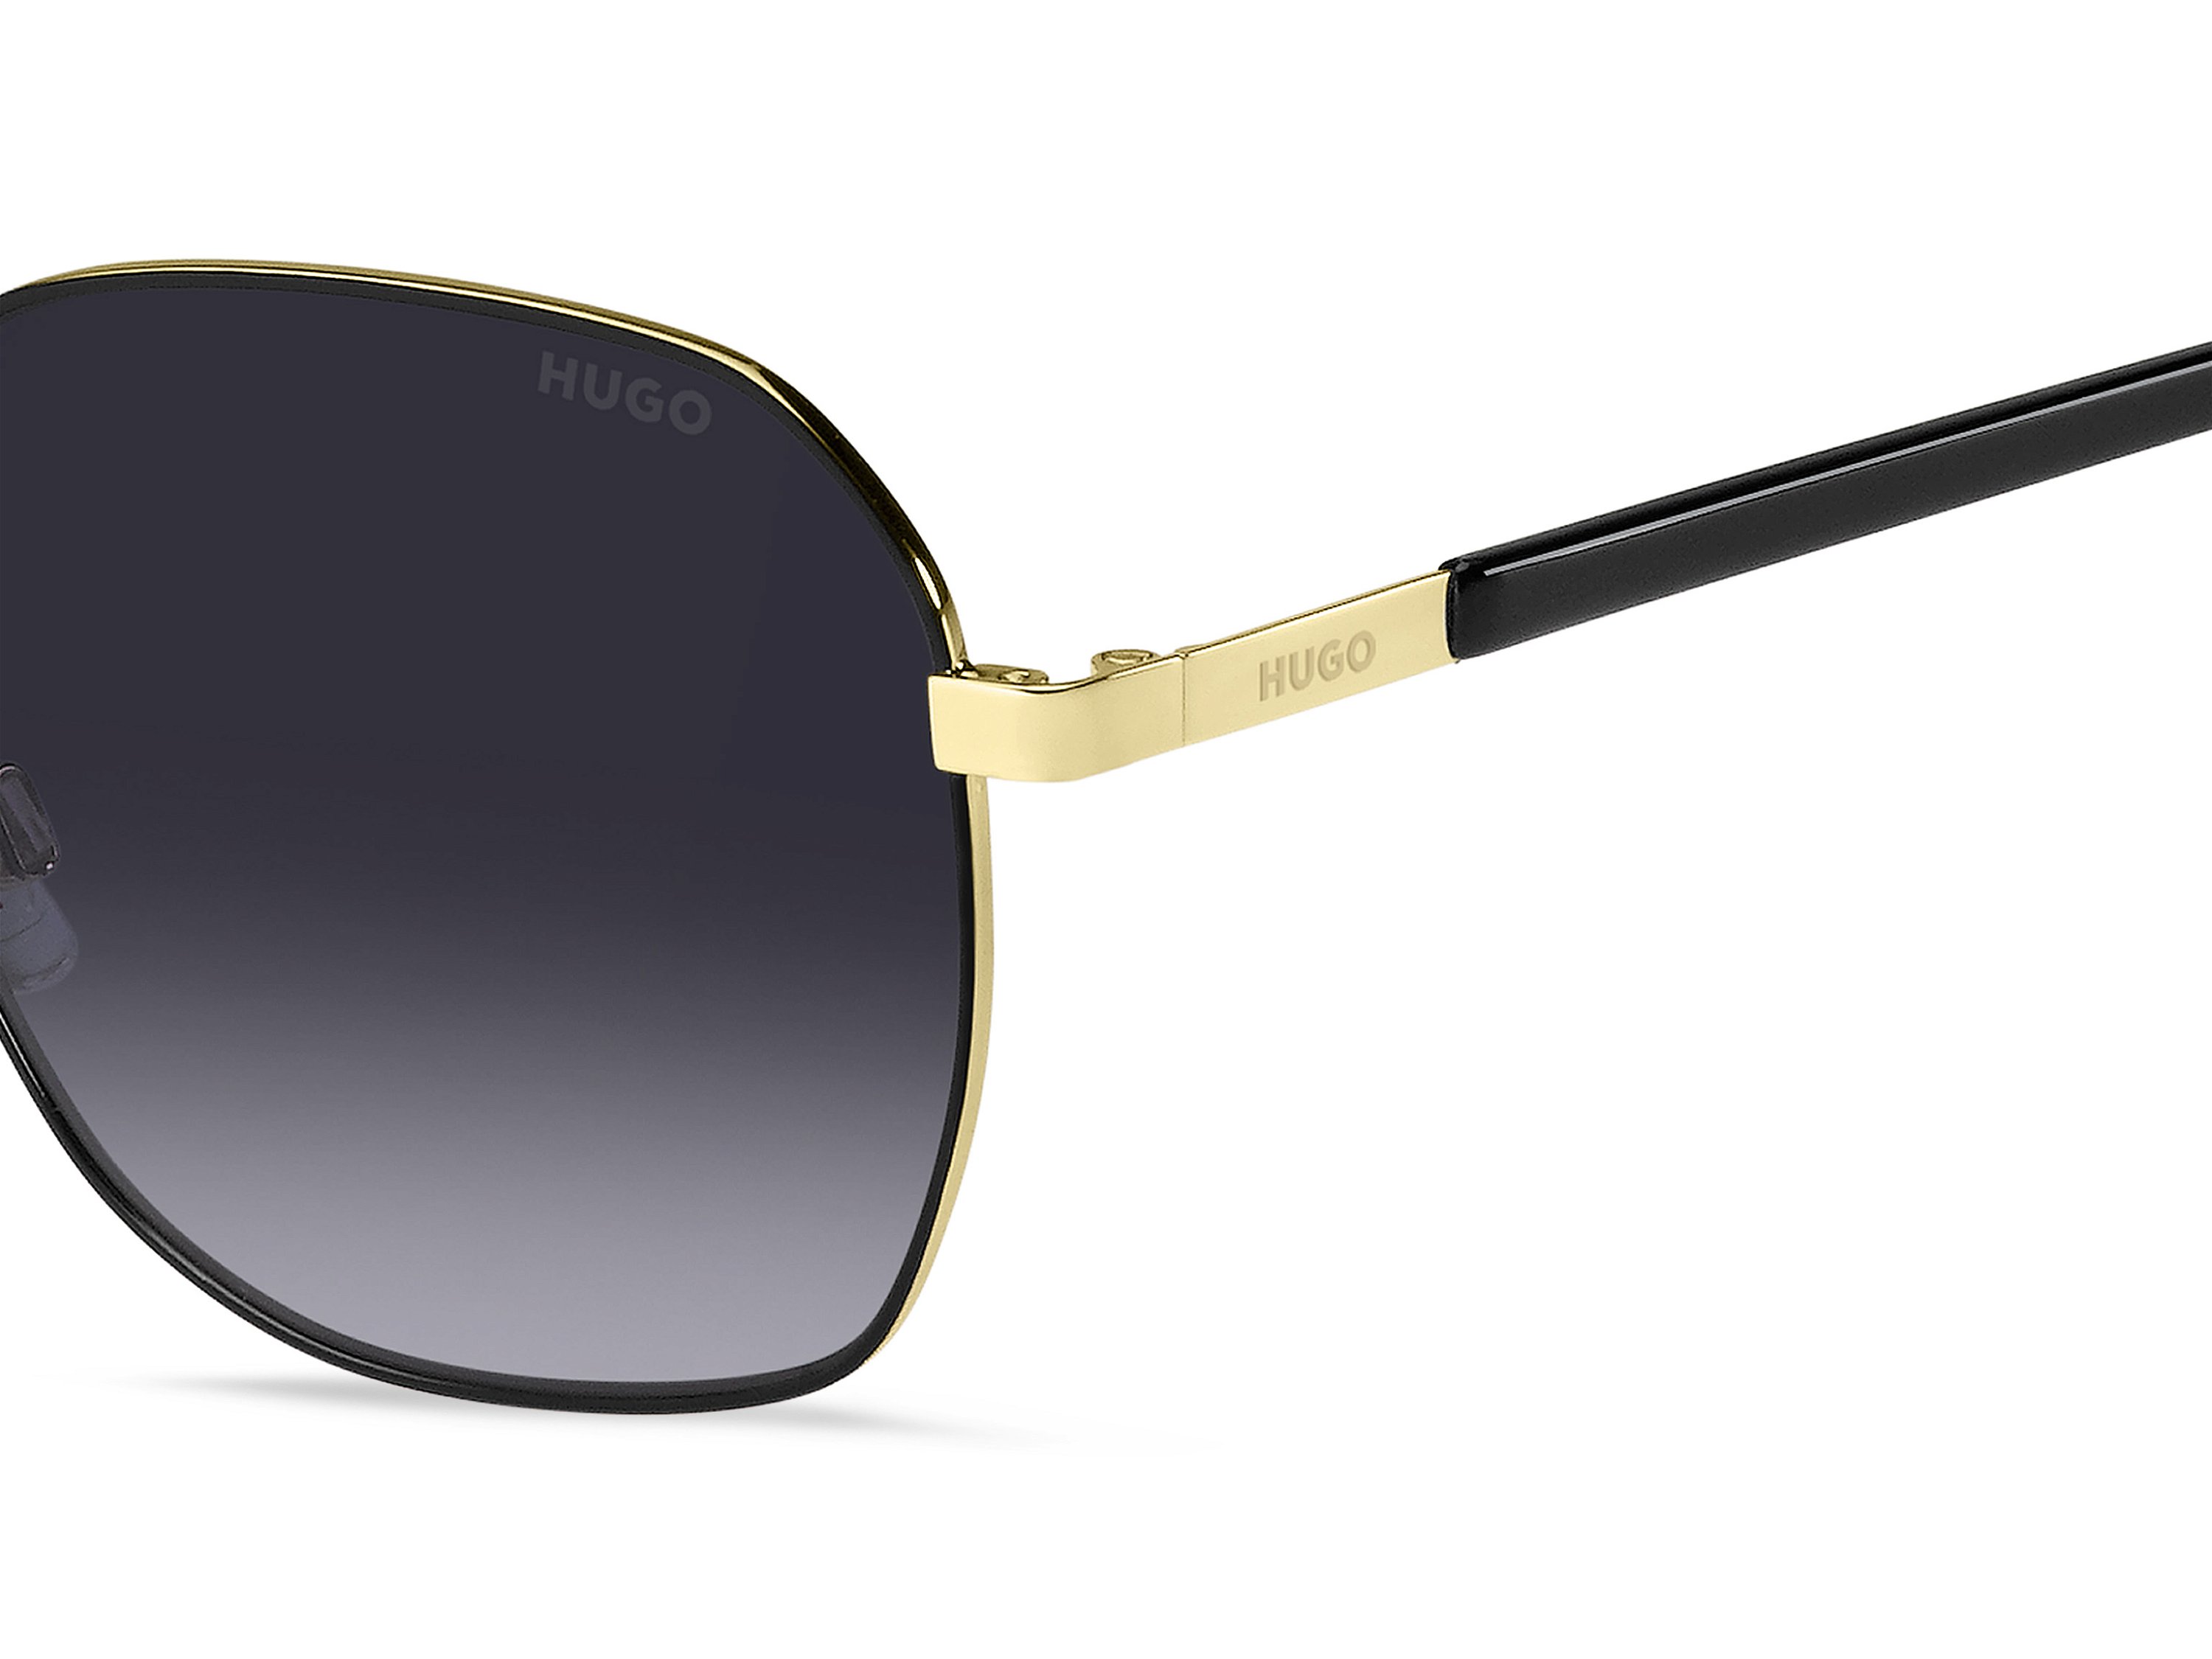 Das Bild zeigt die Sonnenbrille HG1267/S RHL von der Marke Hugo in gold/schwarz.